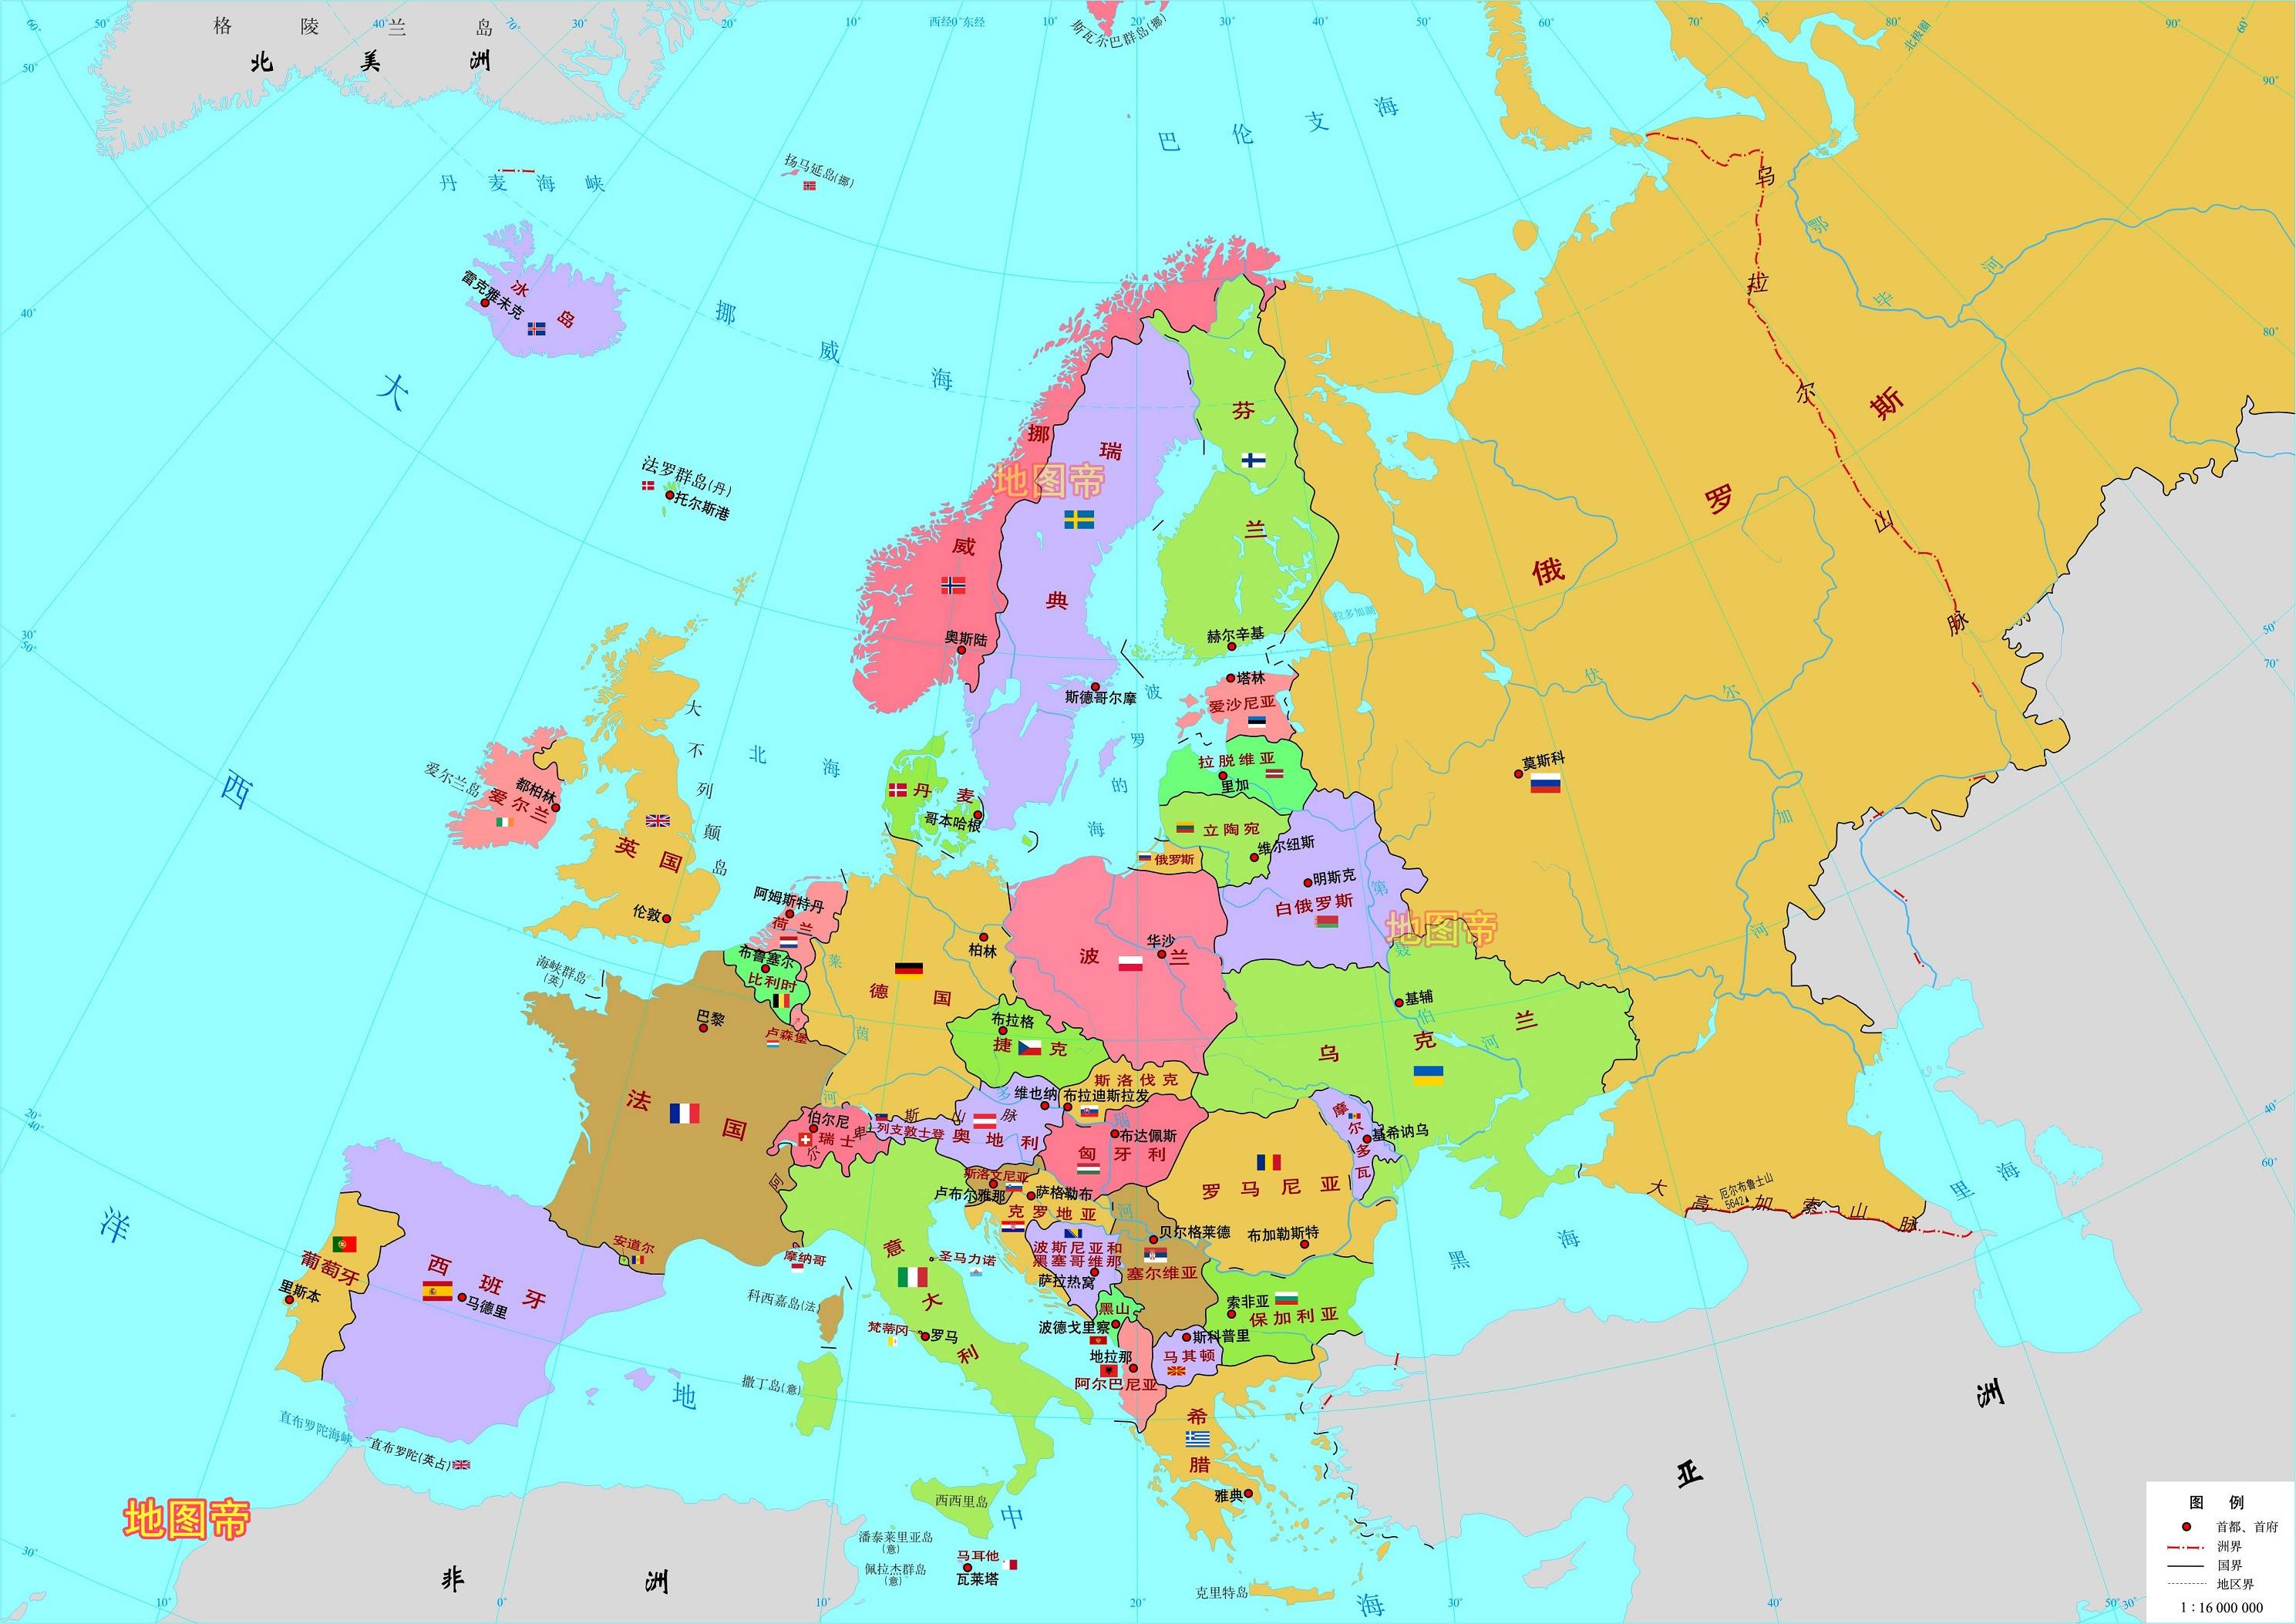 欧洲面积约1016万平方公里,世界第六,占世界陆地总面积约6.8.